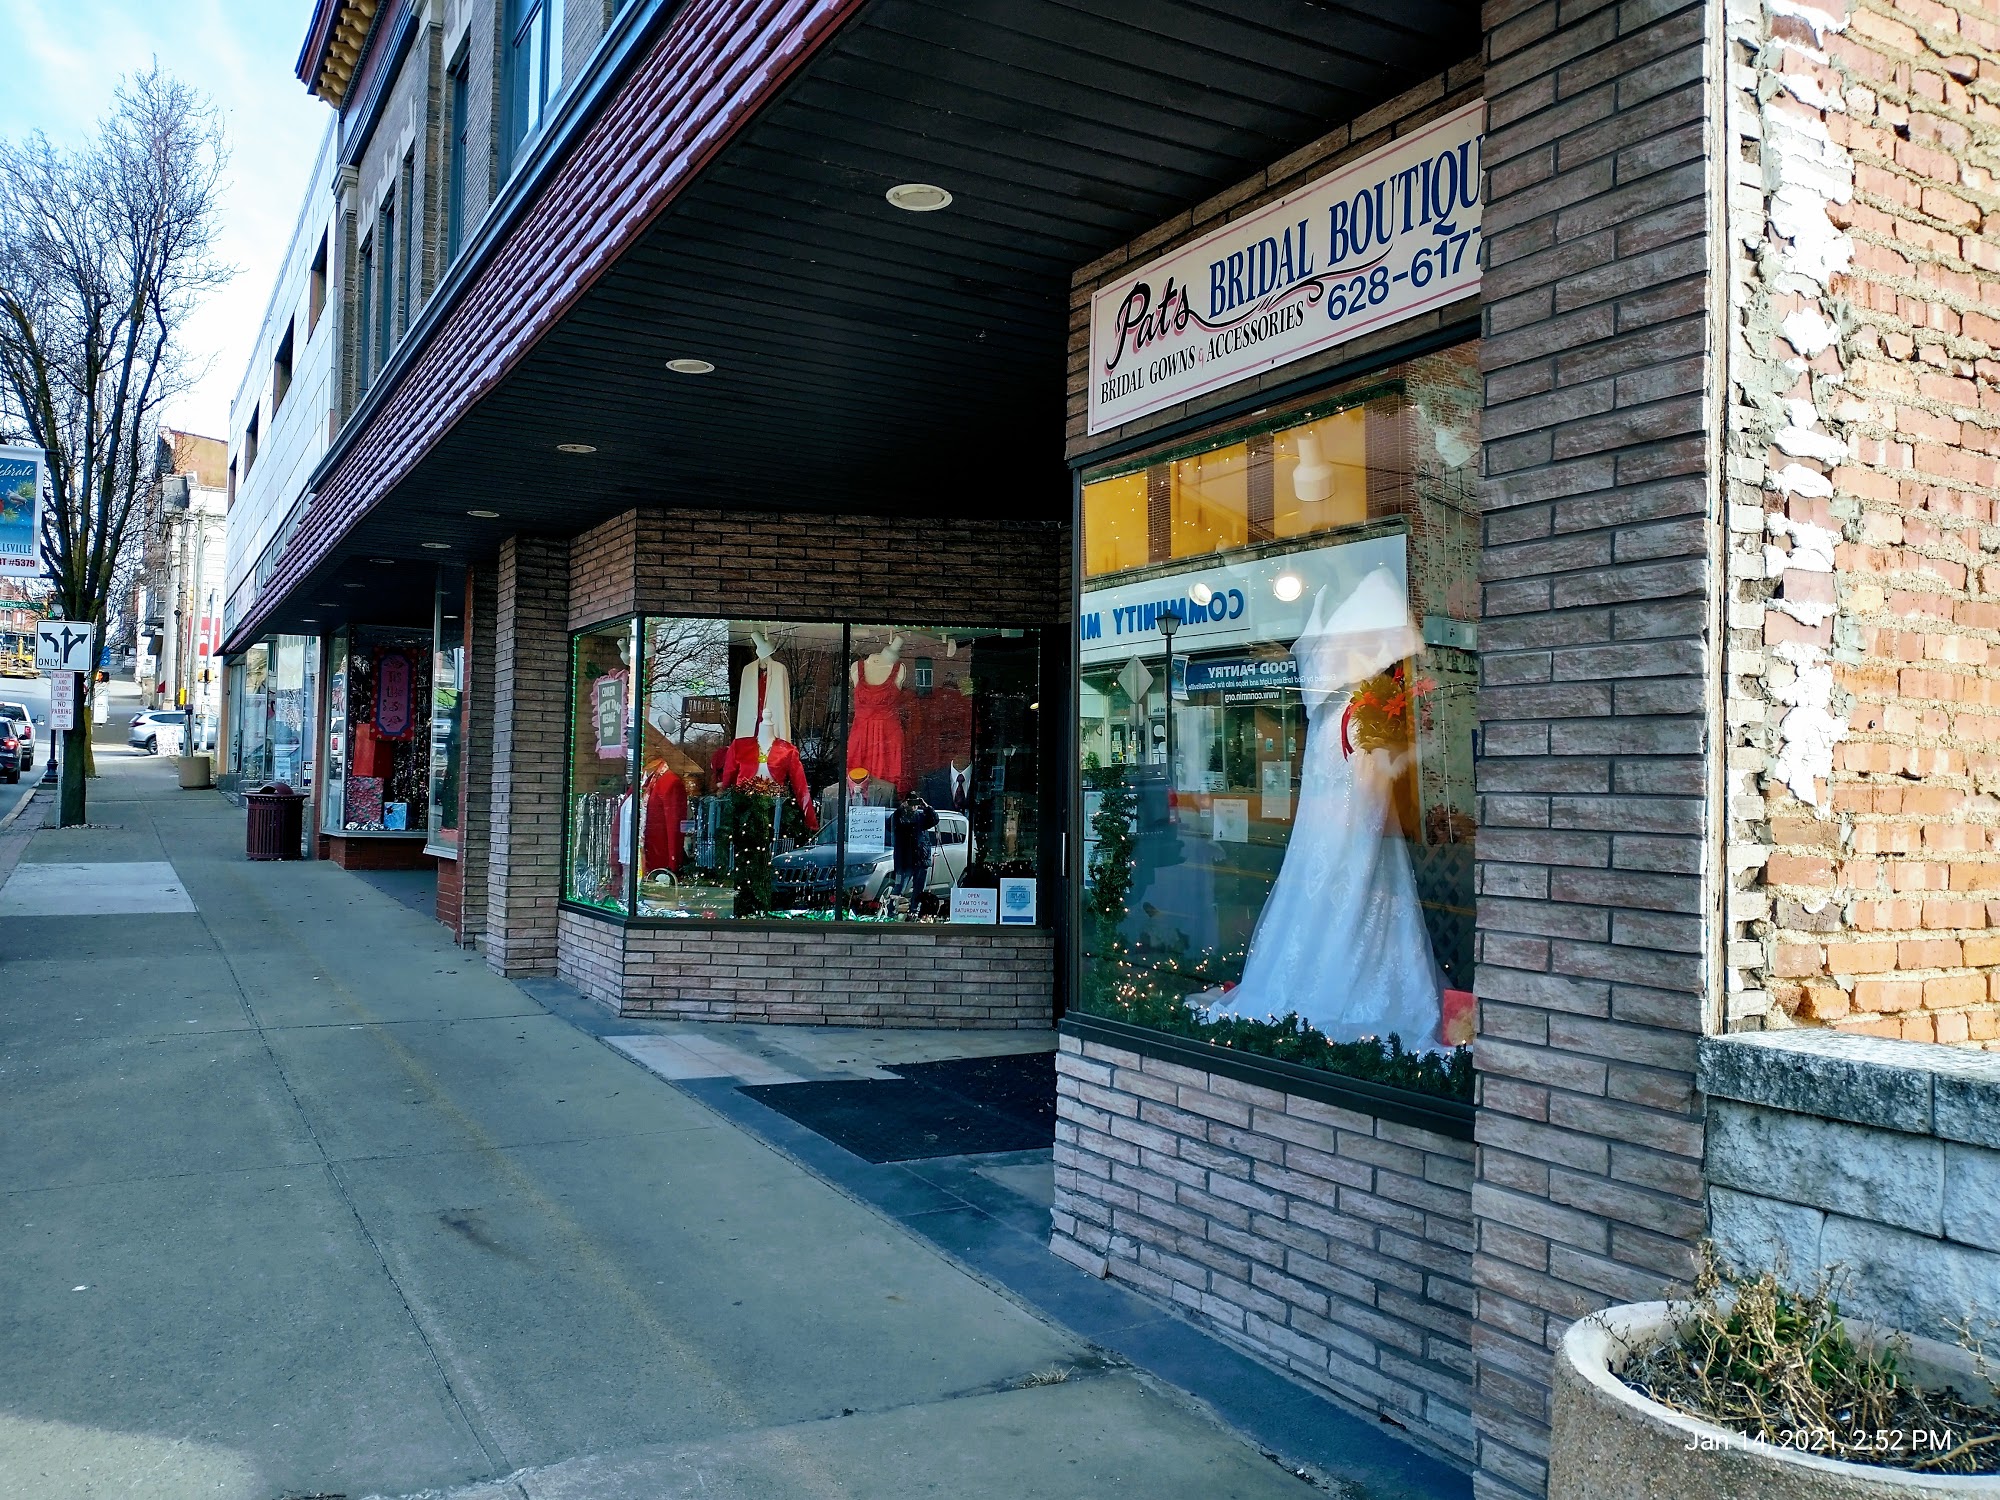 Pat's Bridal Boutique